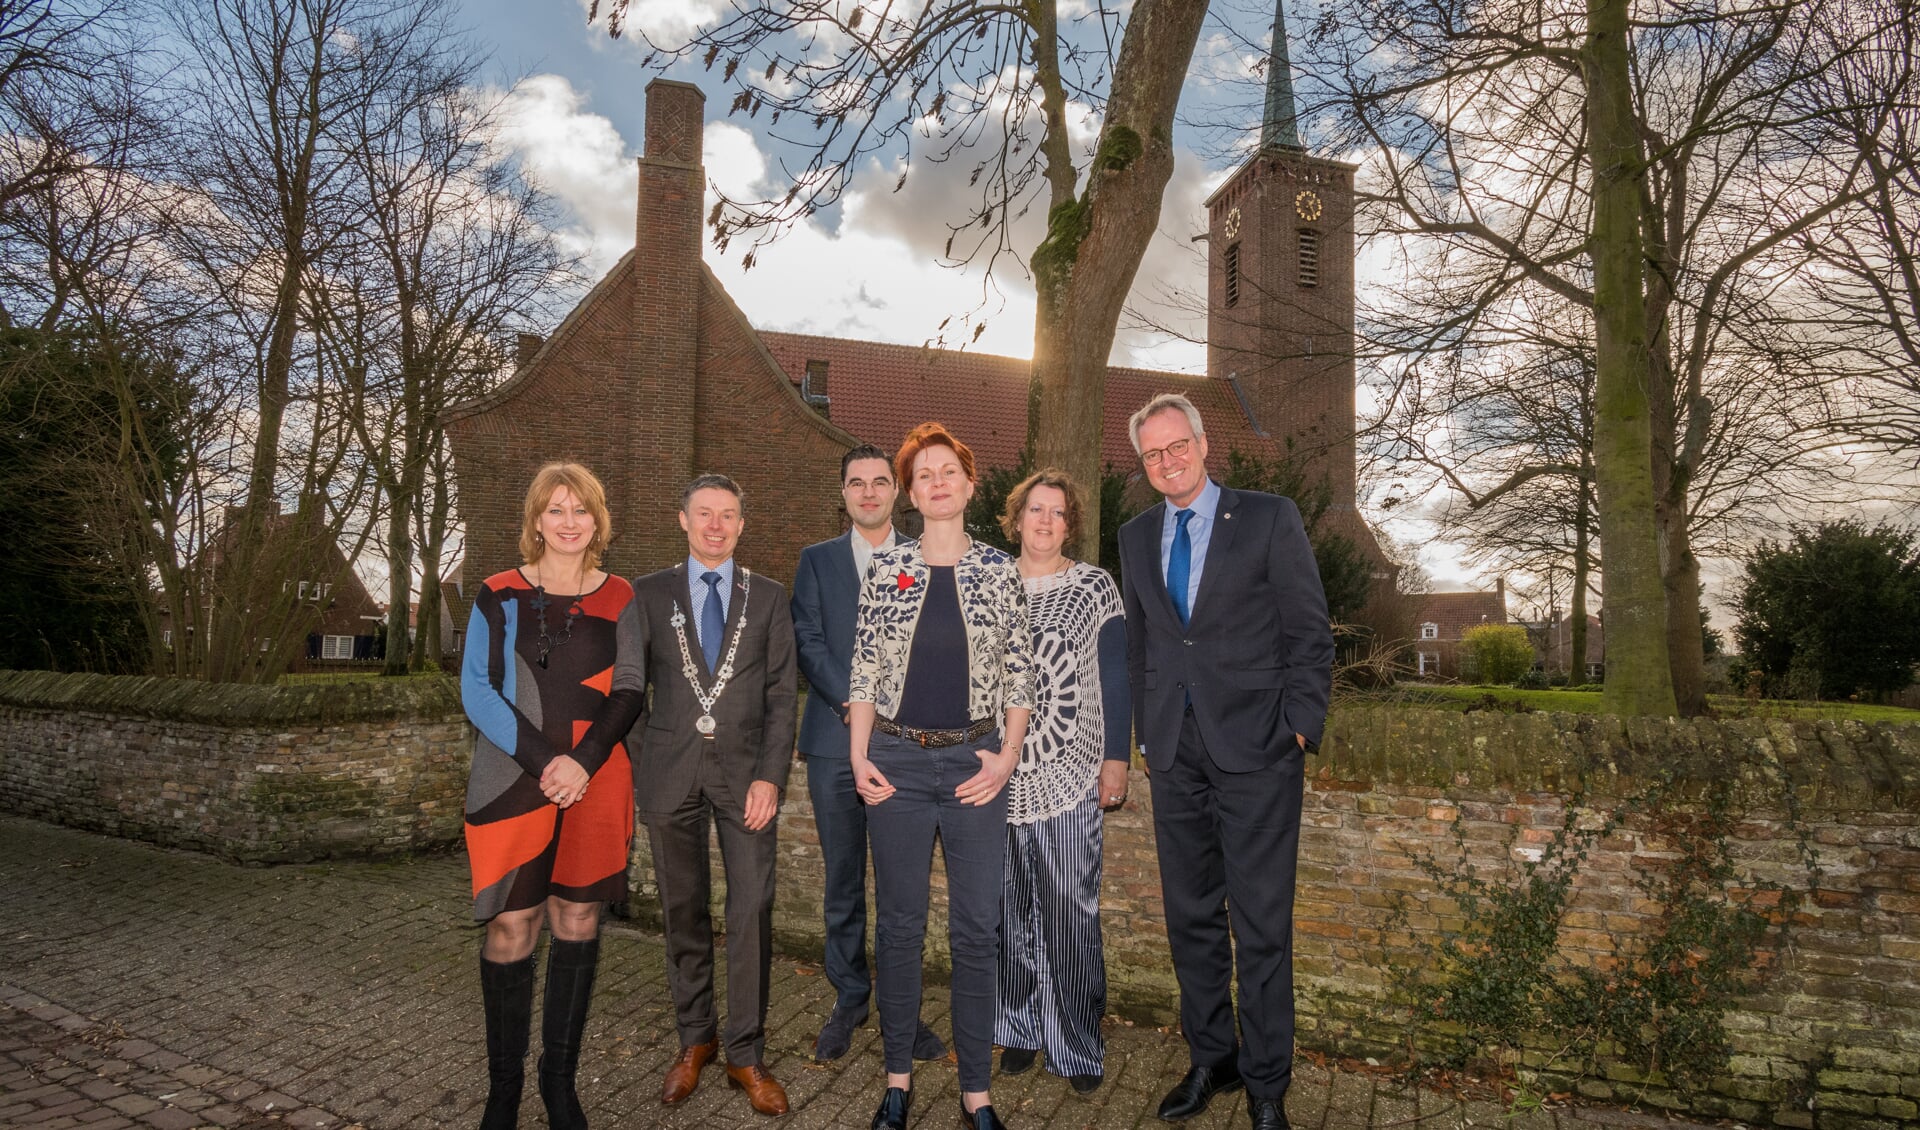 De dorpsraad met rechtsvoor voorzitter Lisette Booij, burgemeester Huub Hieltjes en rechts commissaris van de koning Han Polman.